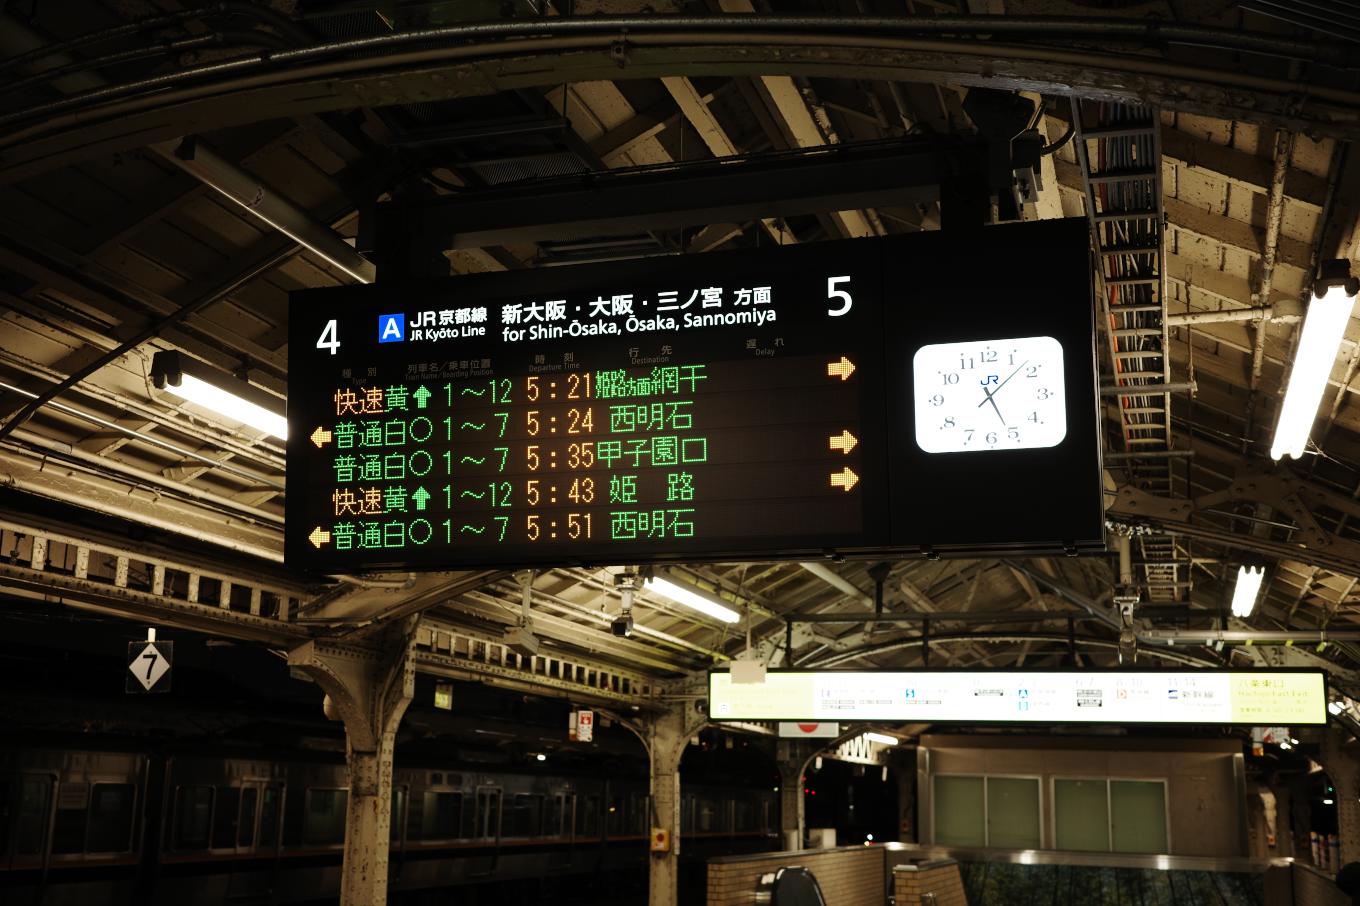 京都駅ホームの発車案内板。